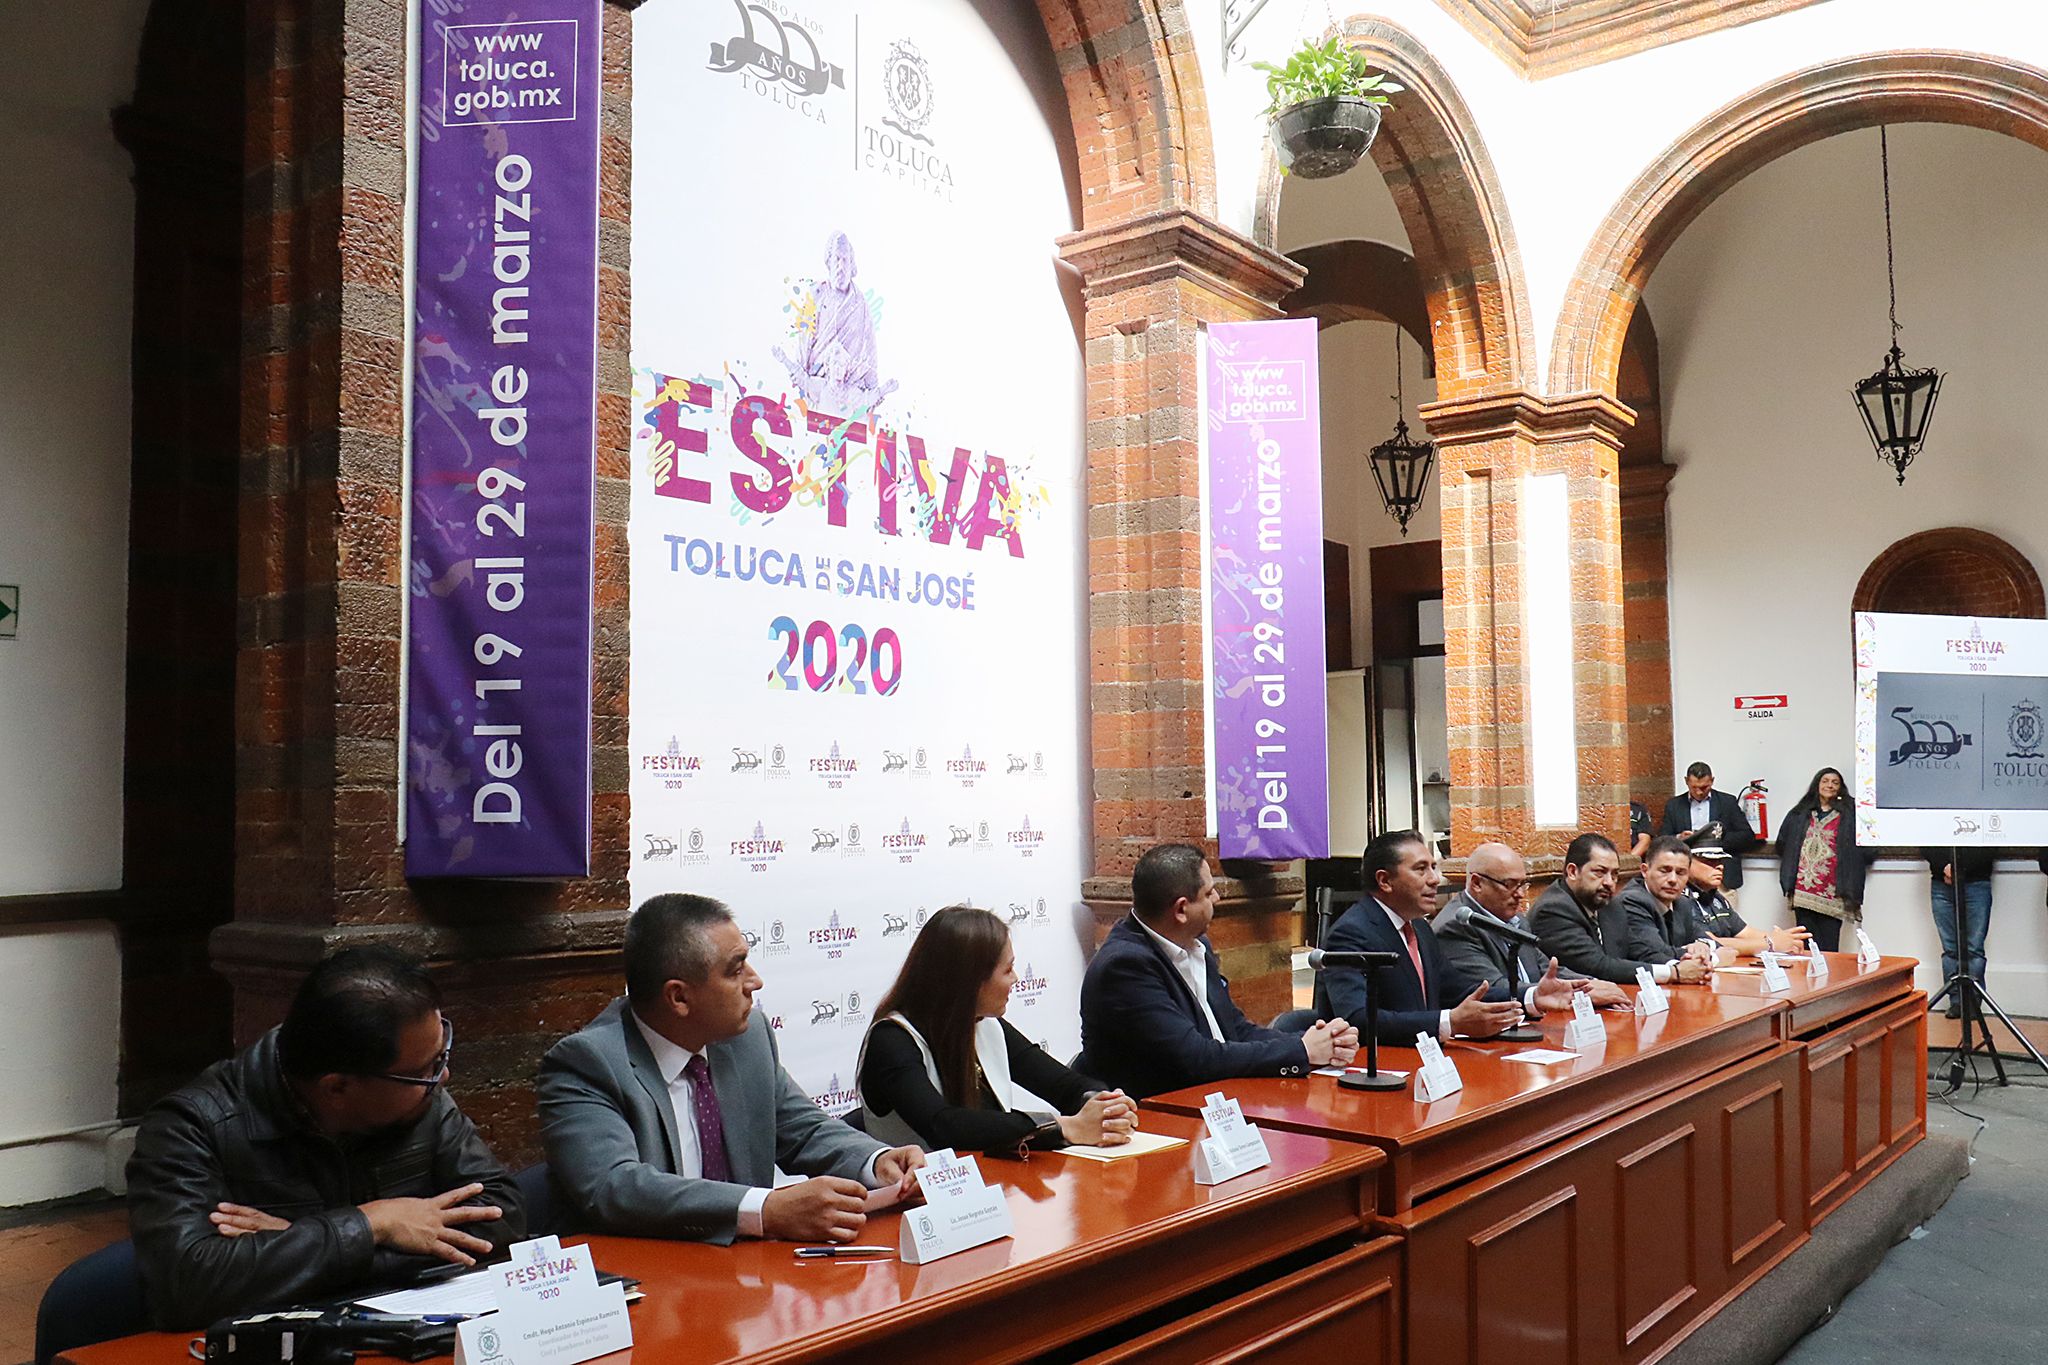 Festiva Toluca 2020, un evento a la altura de la capital del estado